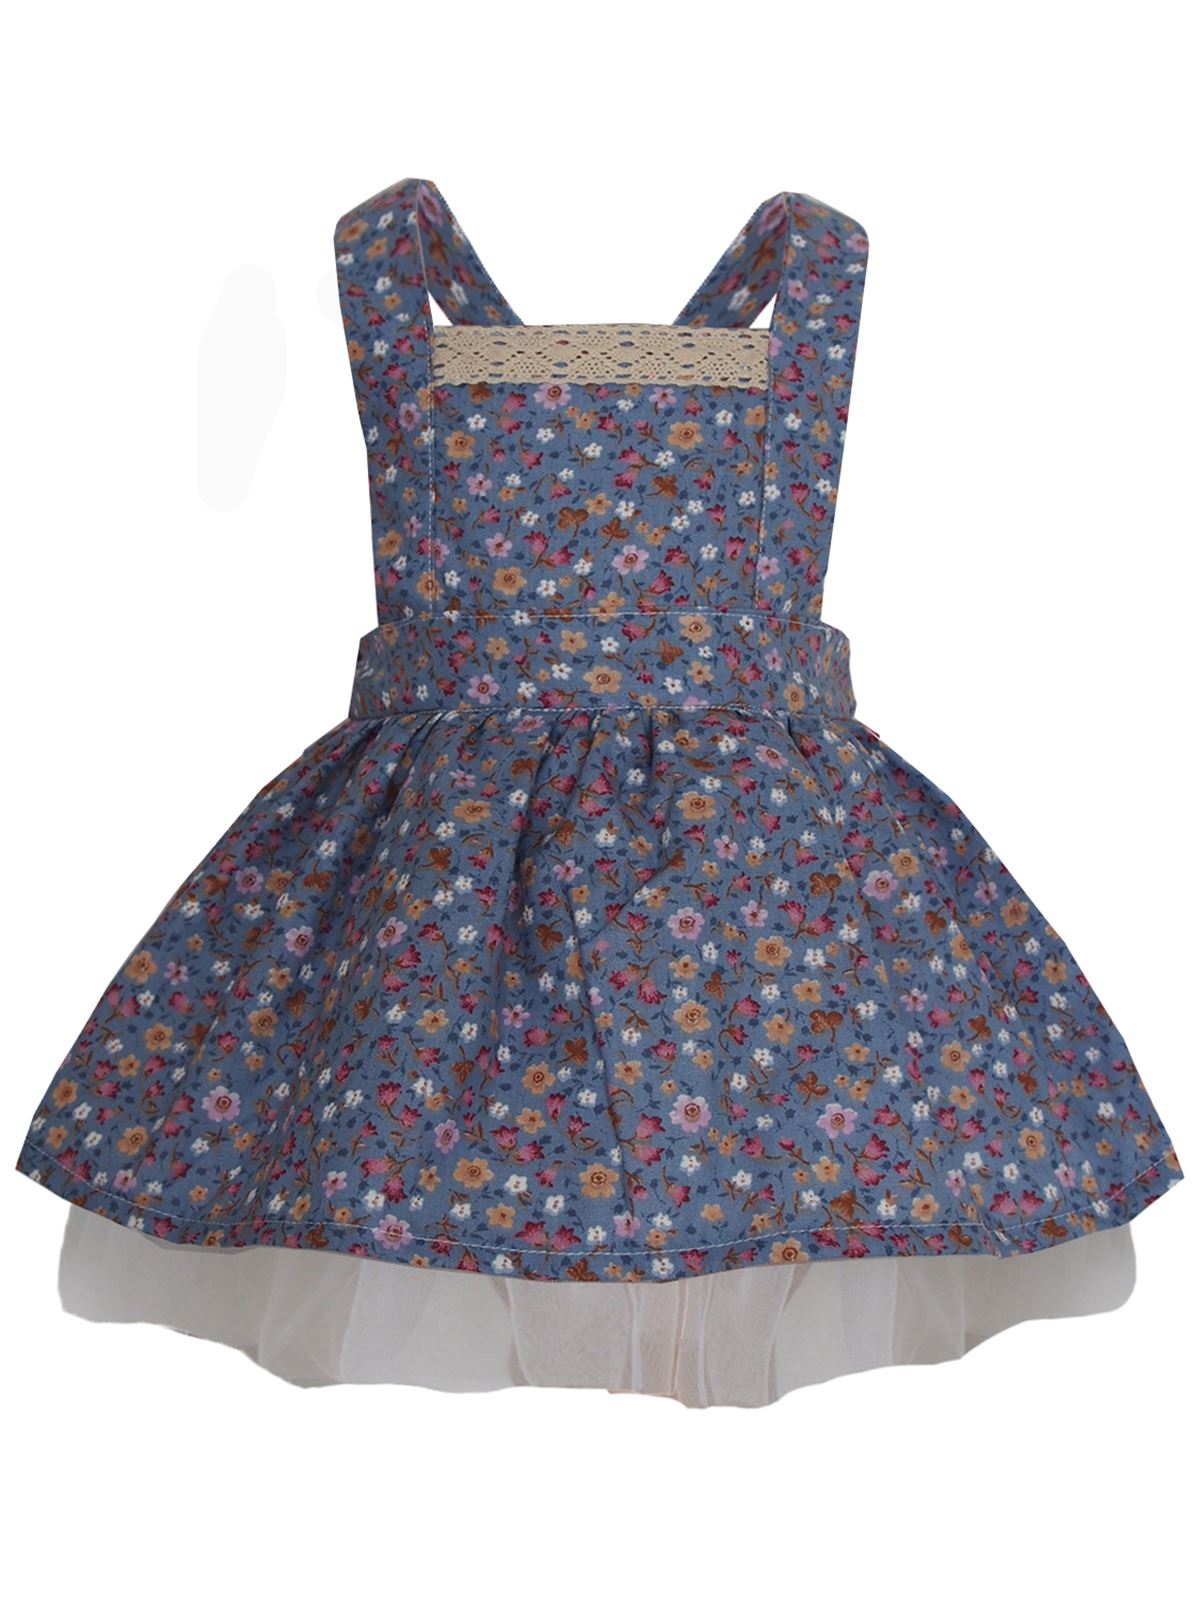 Shecco Babba Kız Çocuk Elbise Mavi Çiçekli 5-8 Yaş